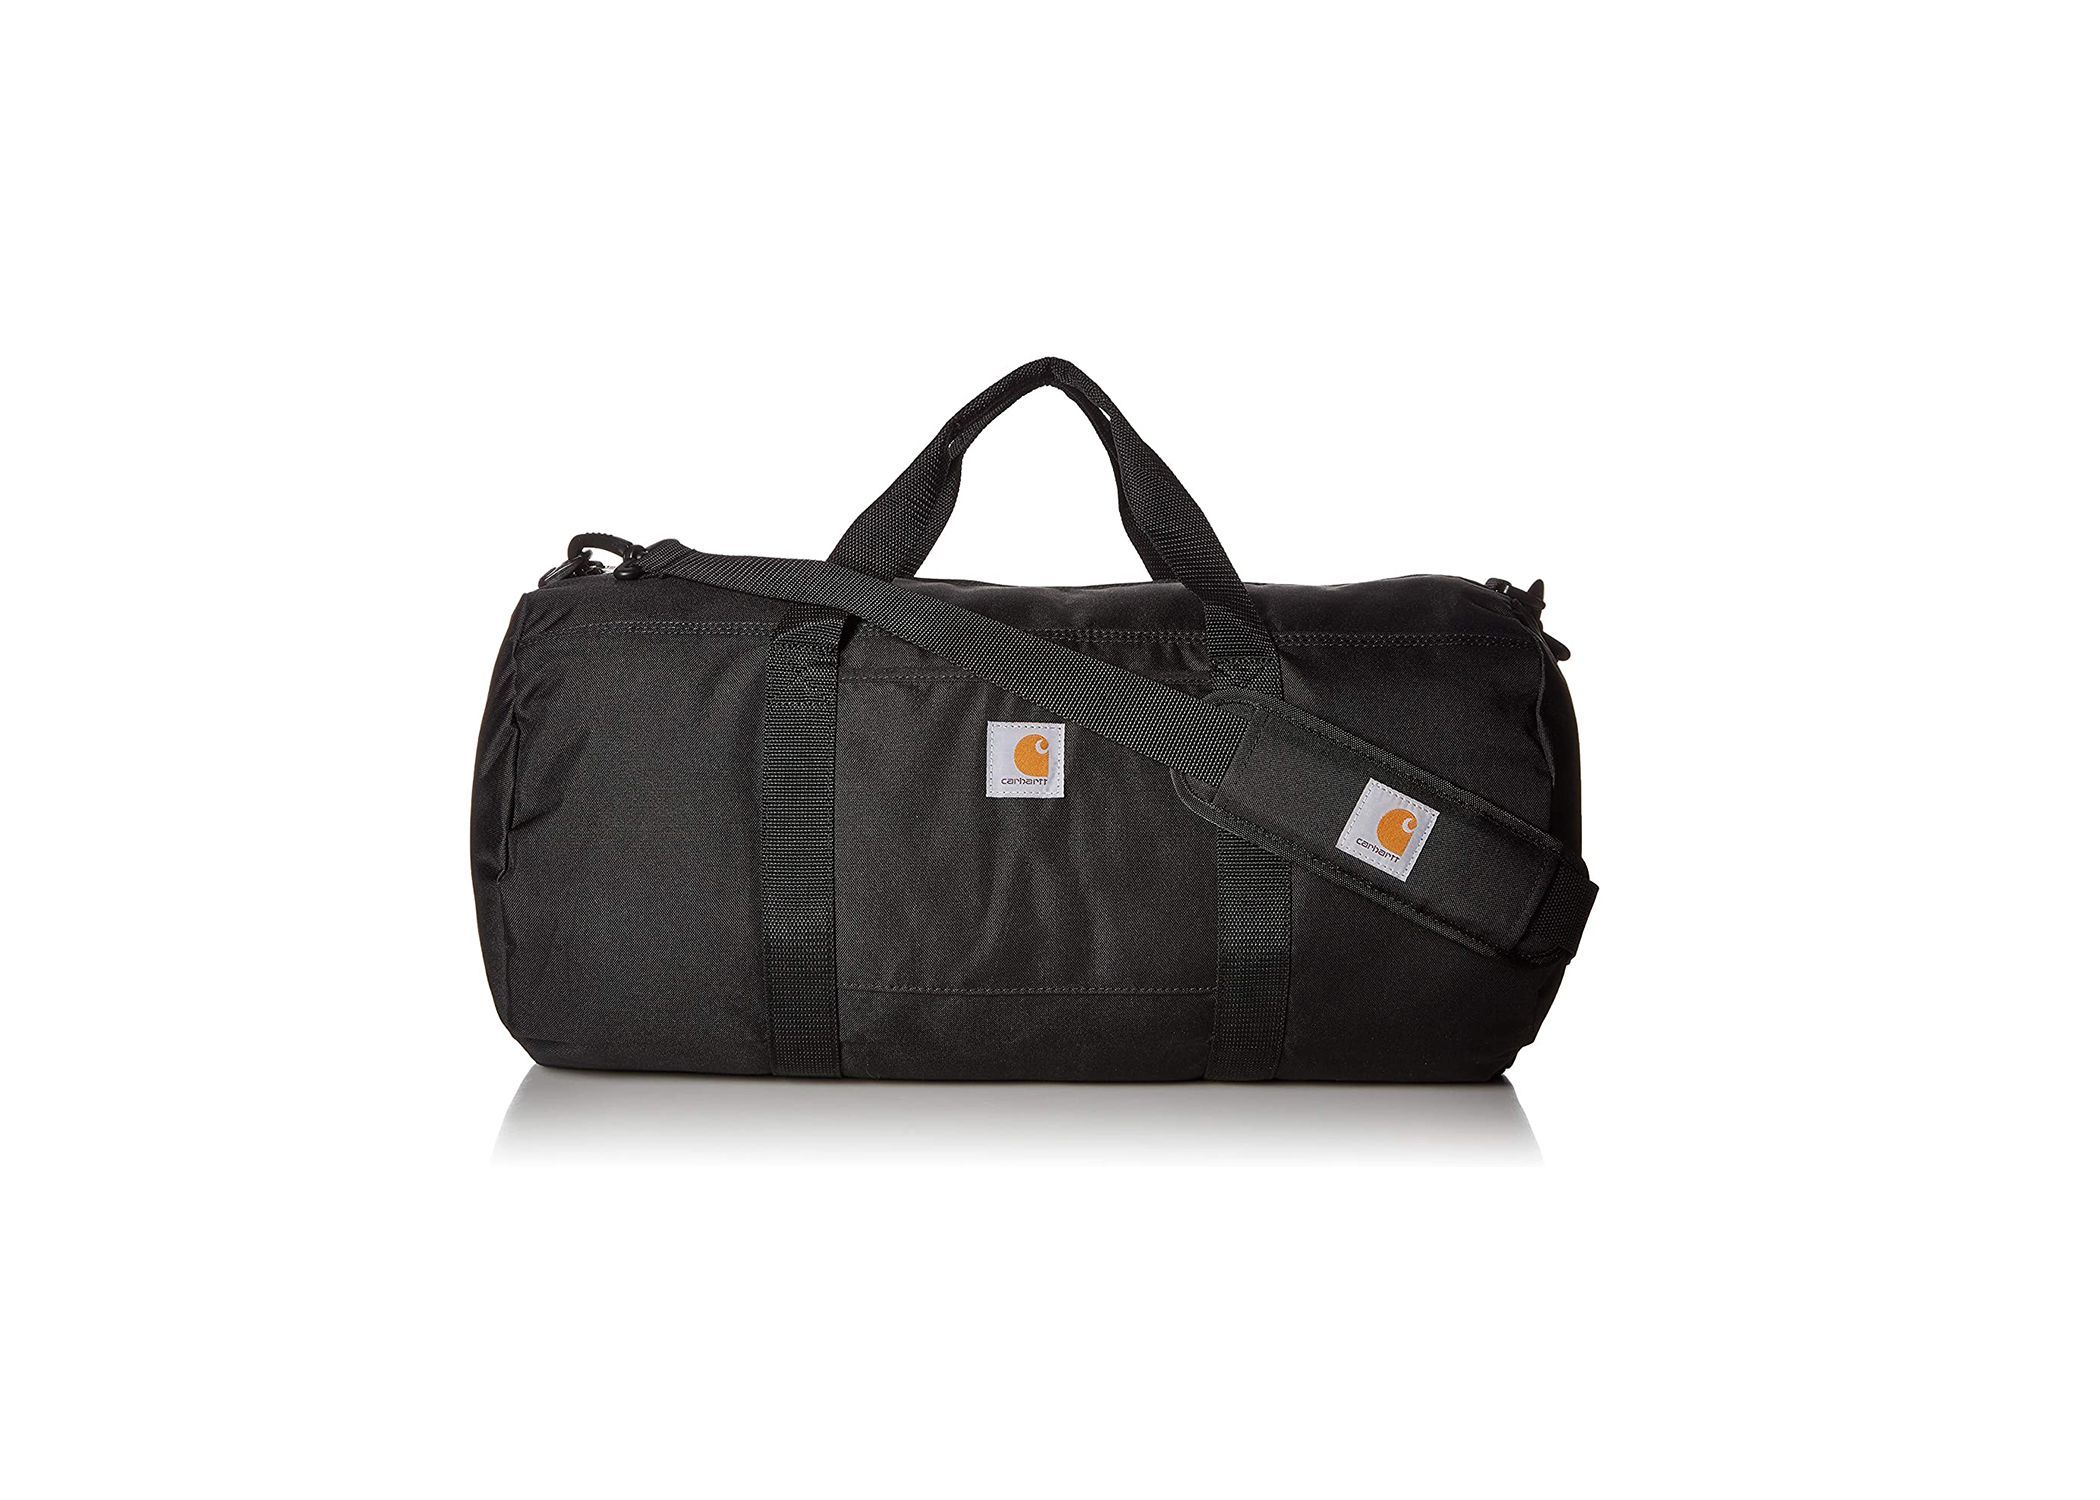 Trade Series 2-in-1 Duffel Bag